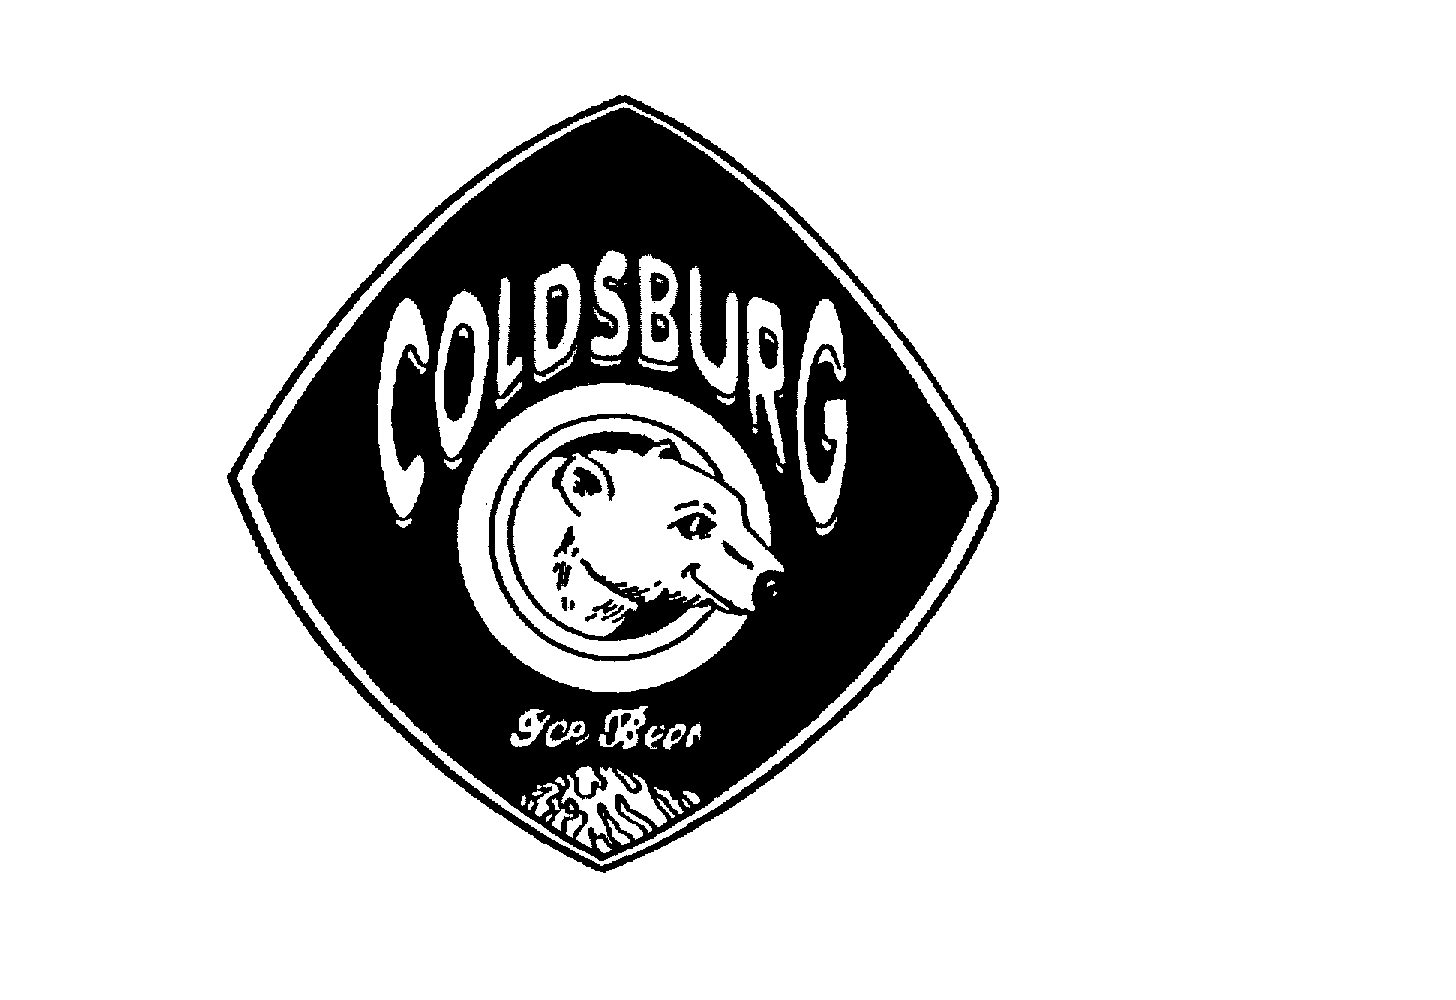  COLDSBURG ICE BEER